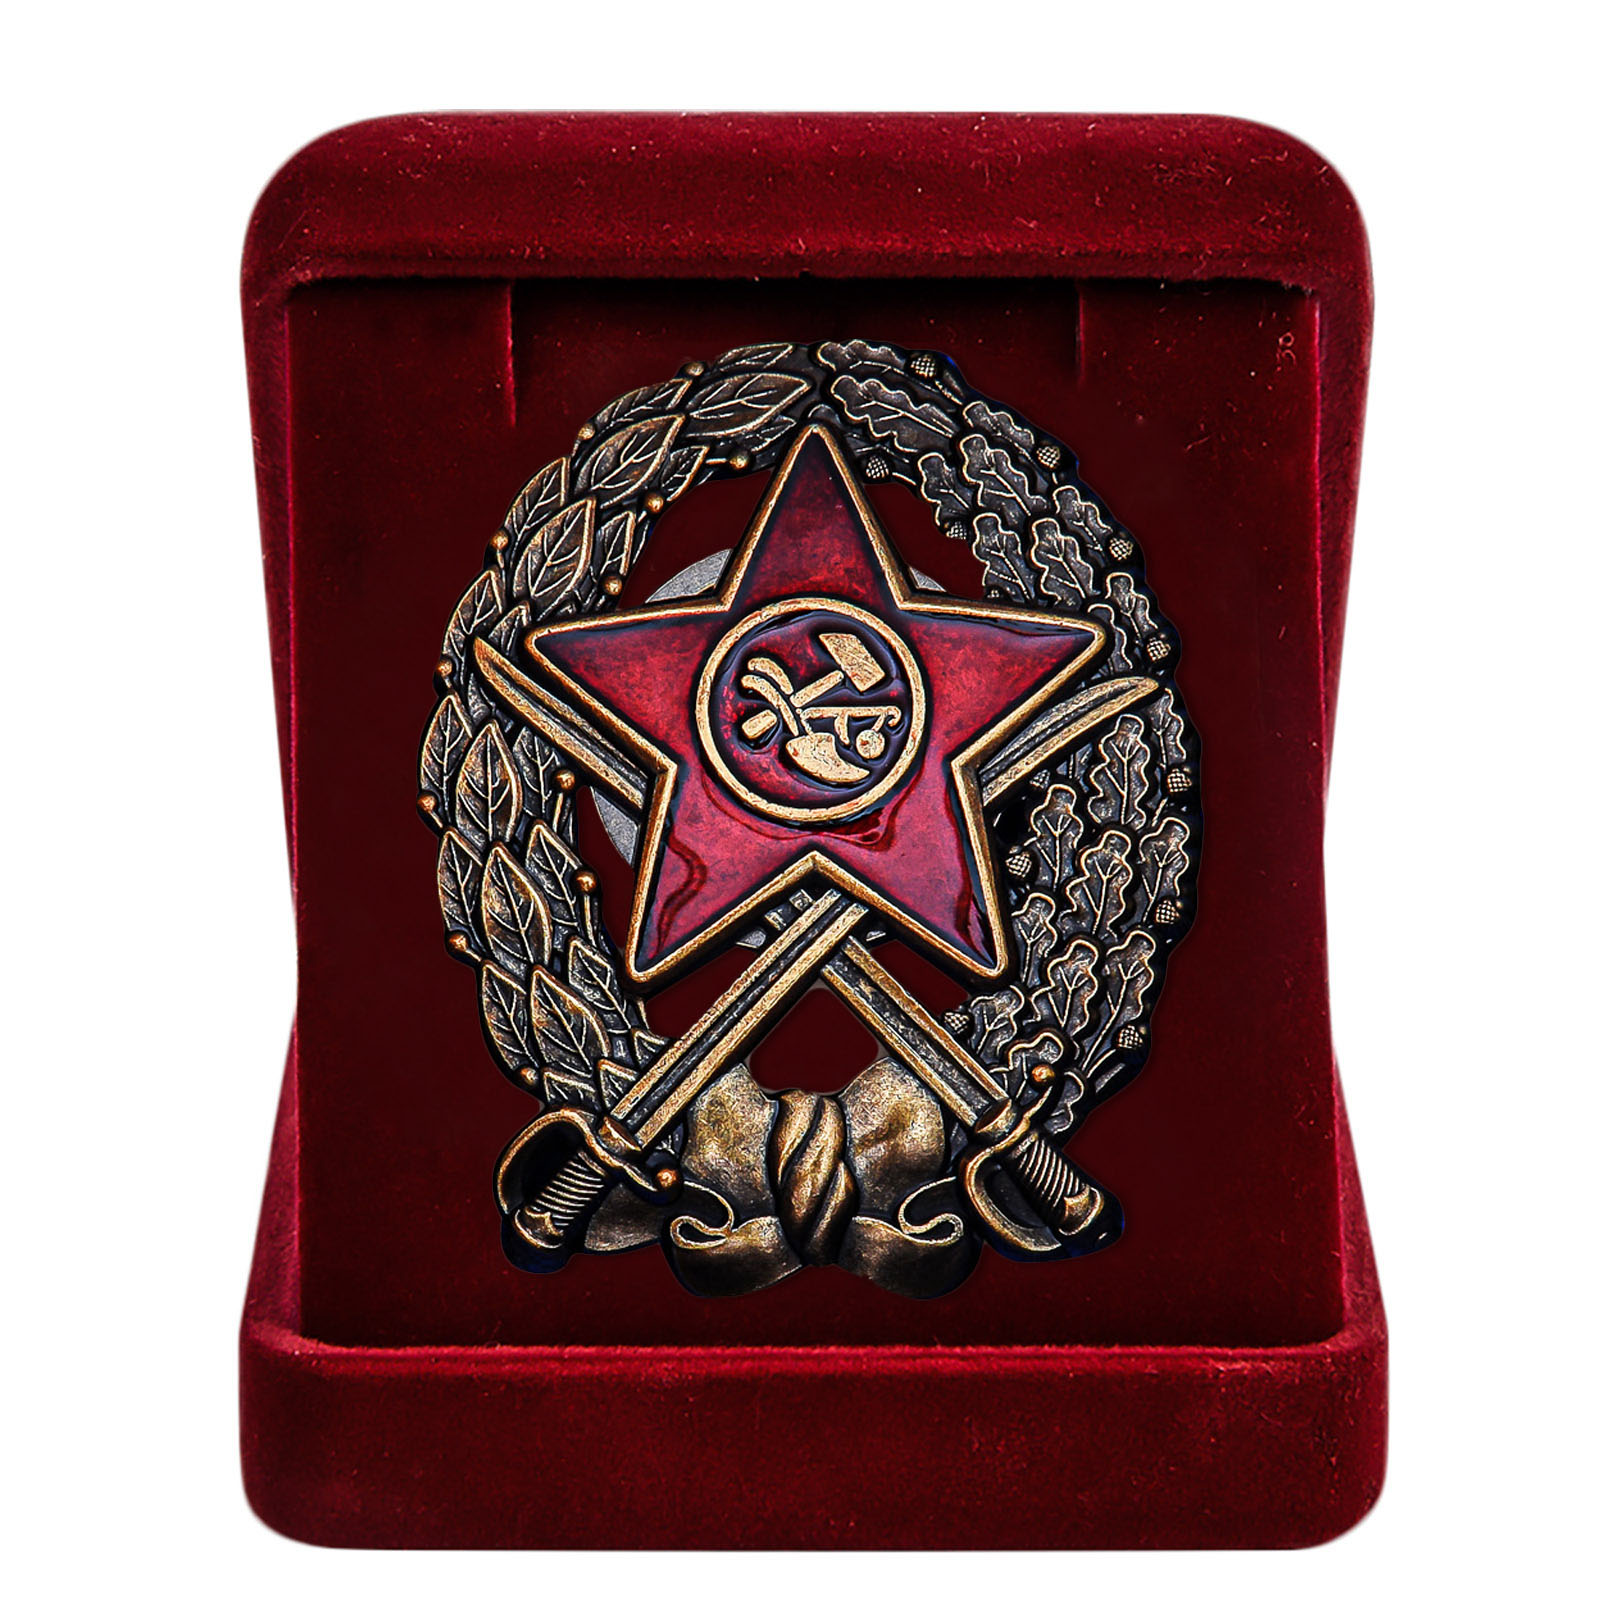 Купить знак Красного Командира кавалерийских частей РККА онлайн выгодно